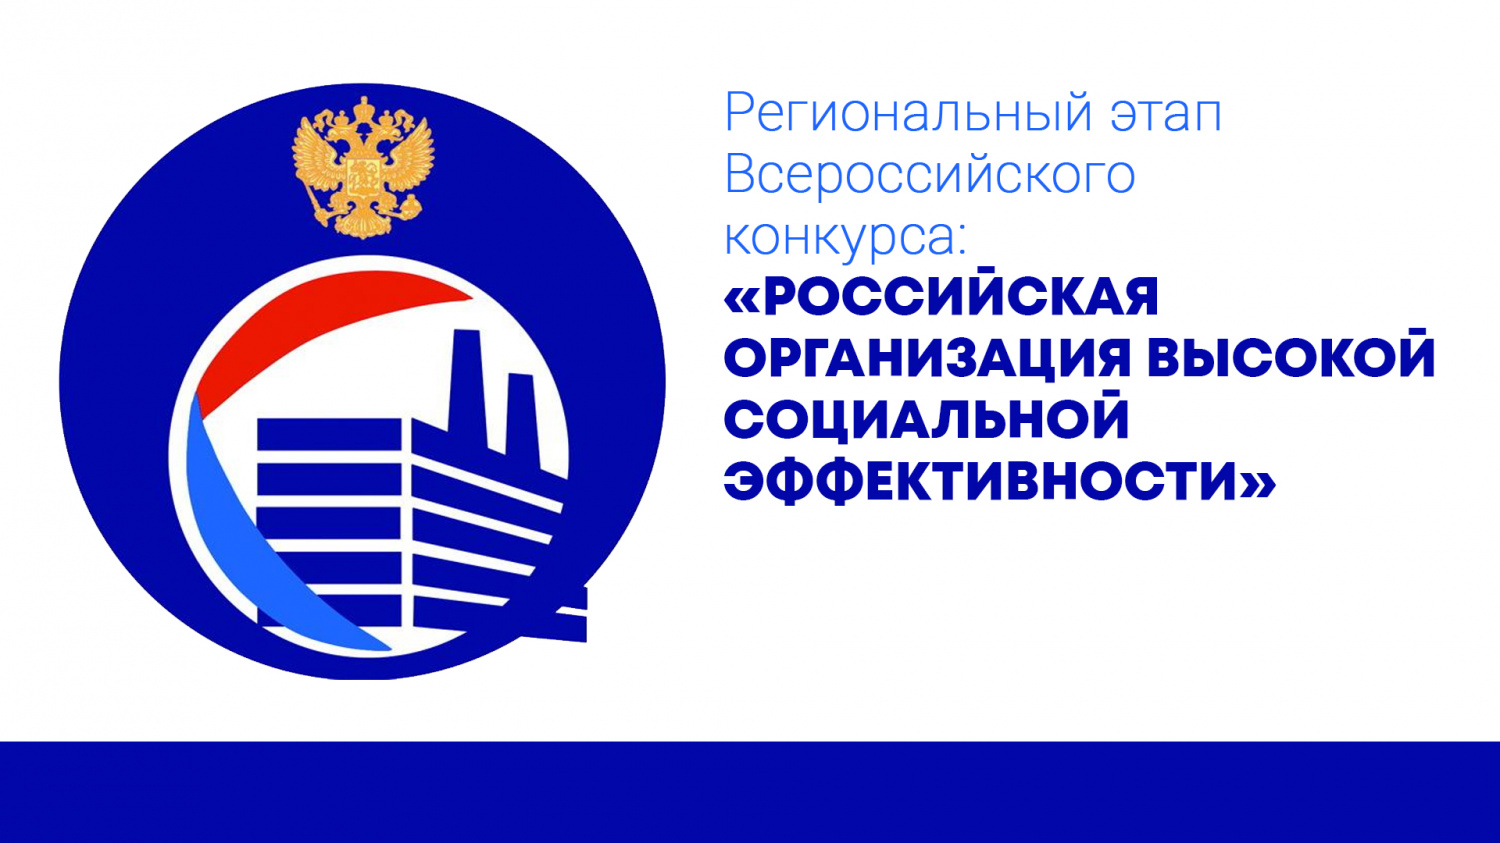 В Пензенской области проводится региональный этап всероссийского конкурса «Российская организация высокой социальной эффективности»